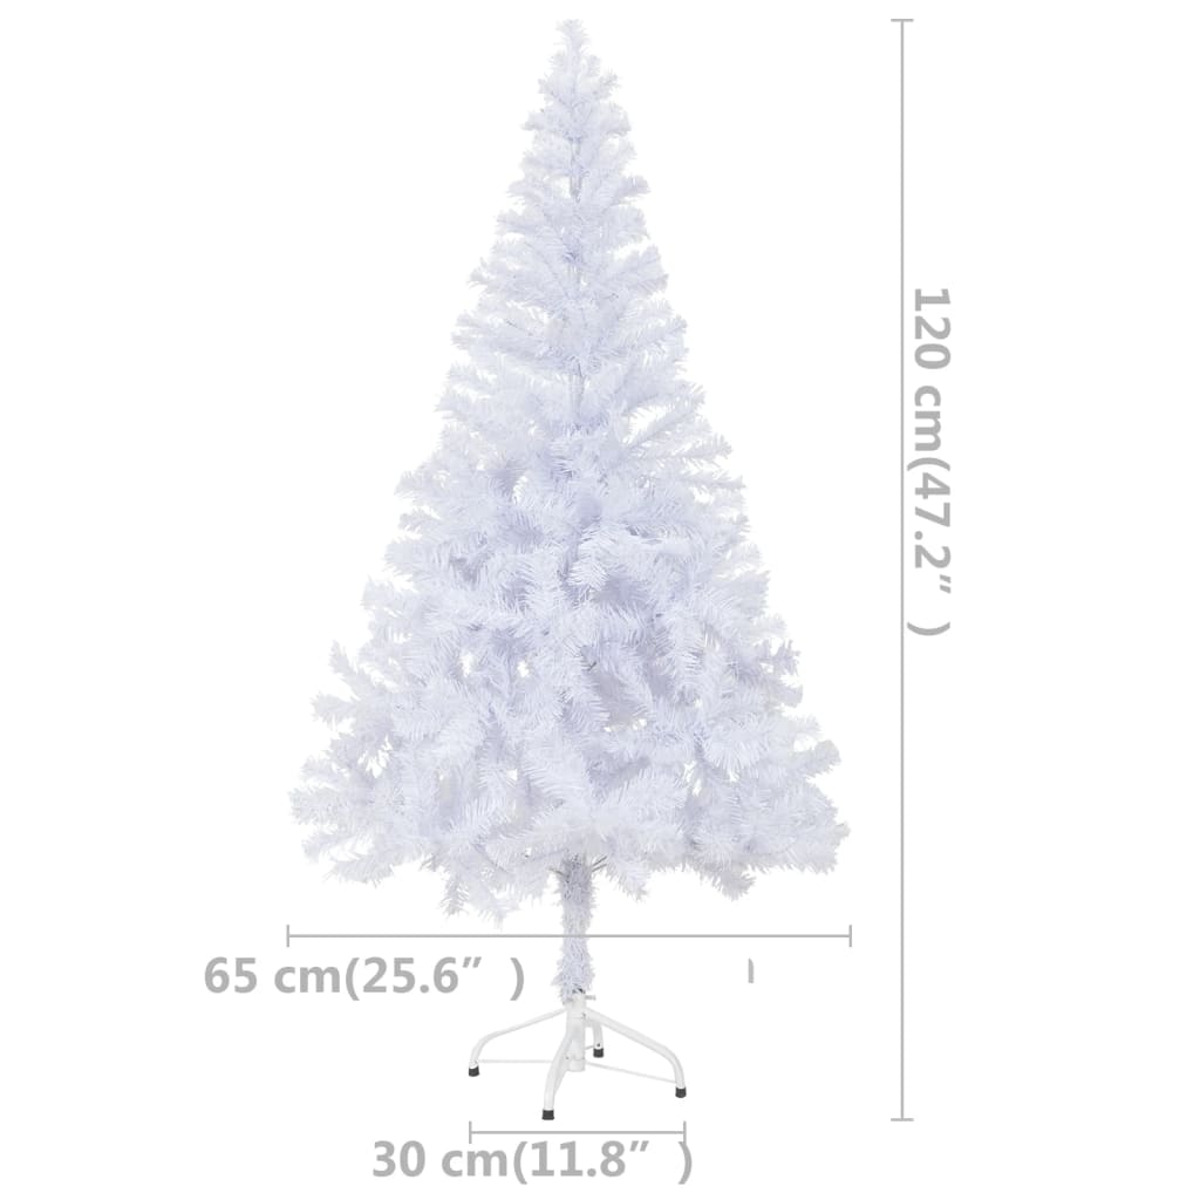 VIDAXL 3077492 Weihnachtsbaum